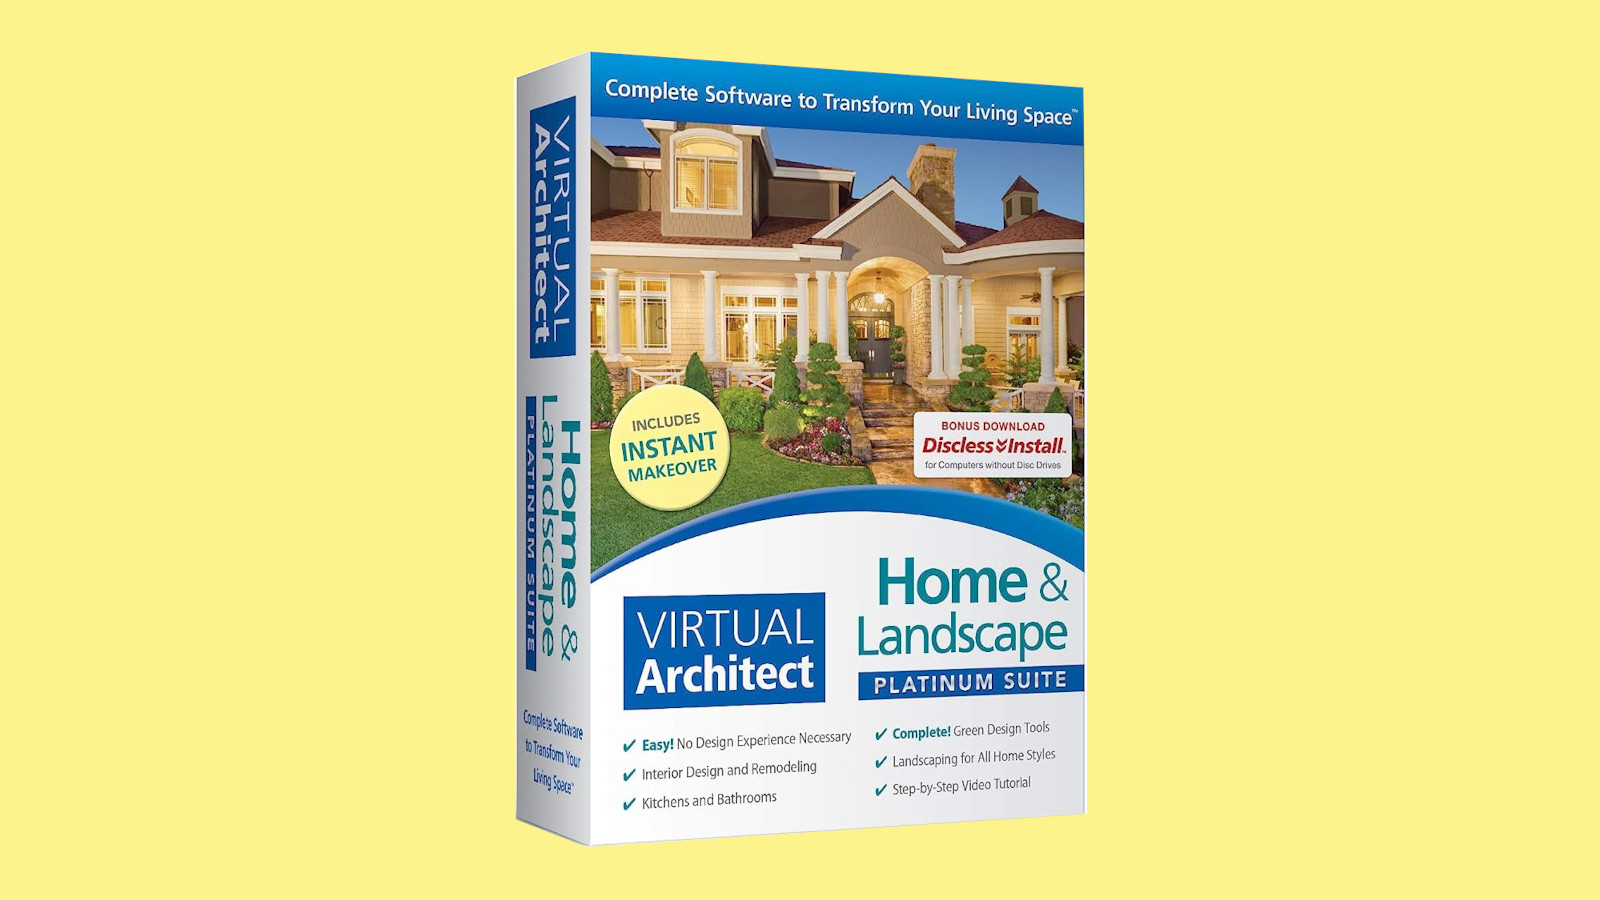 Virtual Architect Home & Landscape Platinum Suite CD Key, 103.45 usd